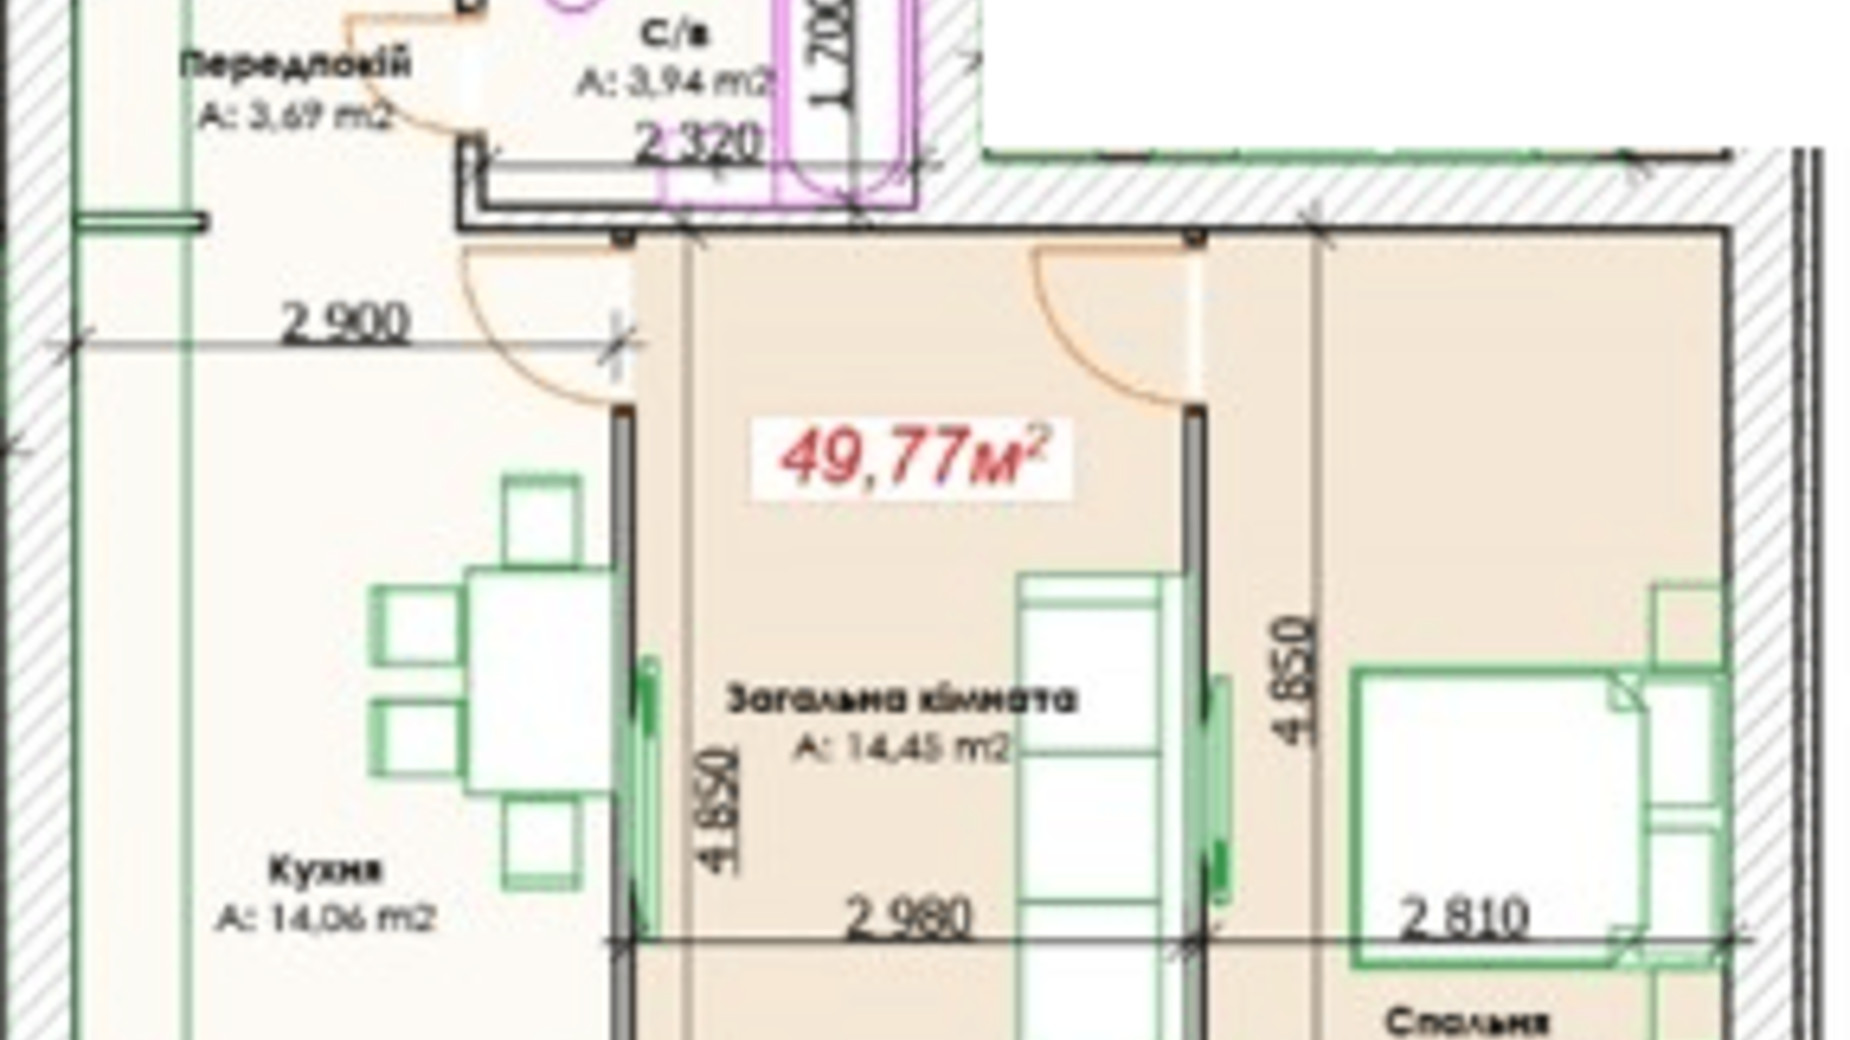 Планировка 2-комнатной квартиры в КД GoodHome 49.77 м², фото 375900